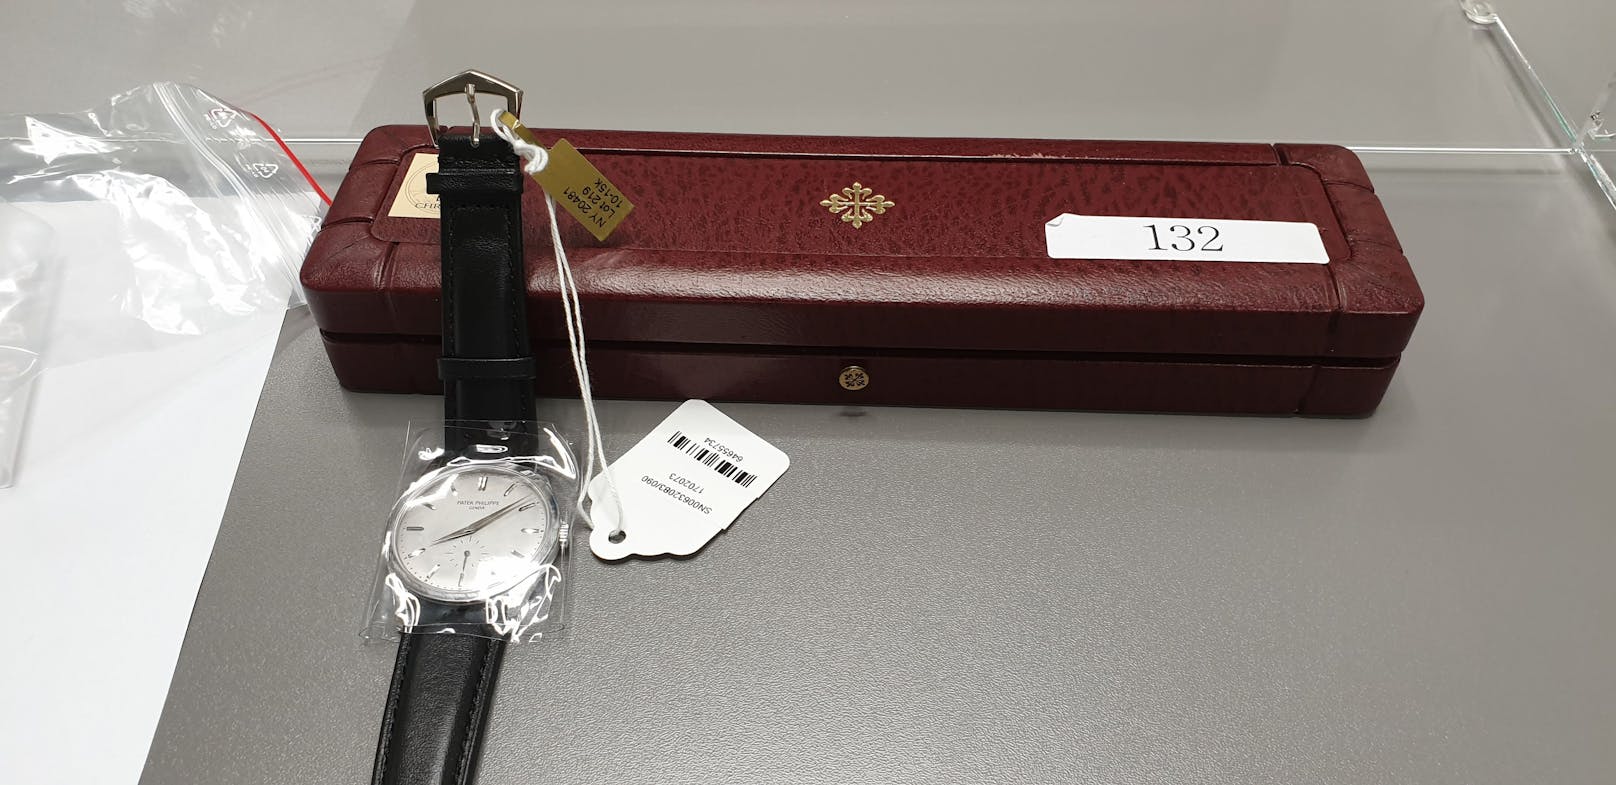 Schmuggler aufgeflogen: Zollbeamte stellten am Flughafen Wien-Schwechat hochpreisige Uhren im Wert von 155.000 Euro sicher.